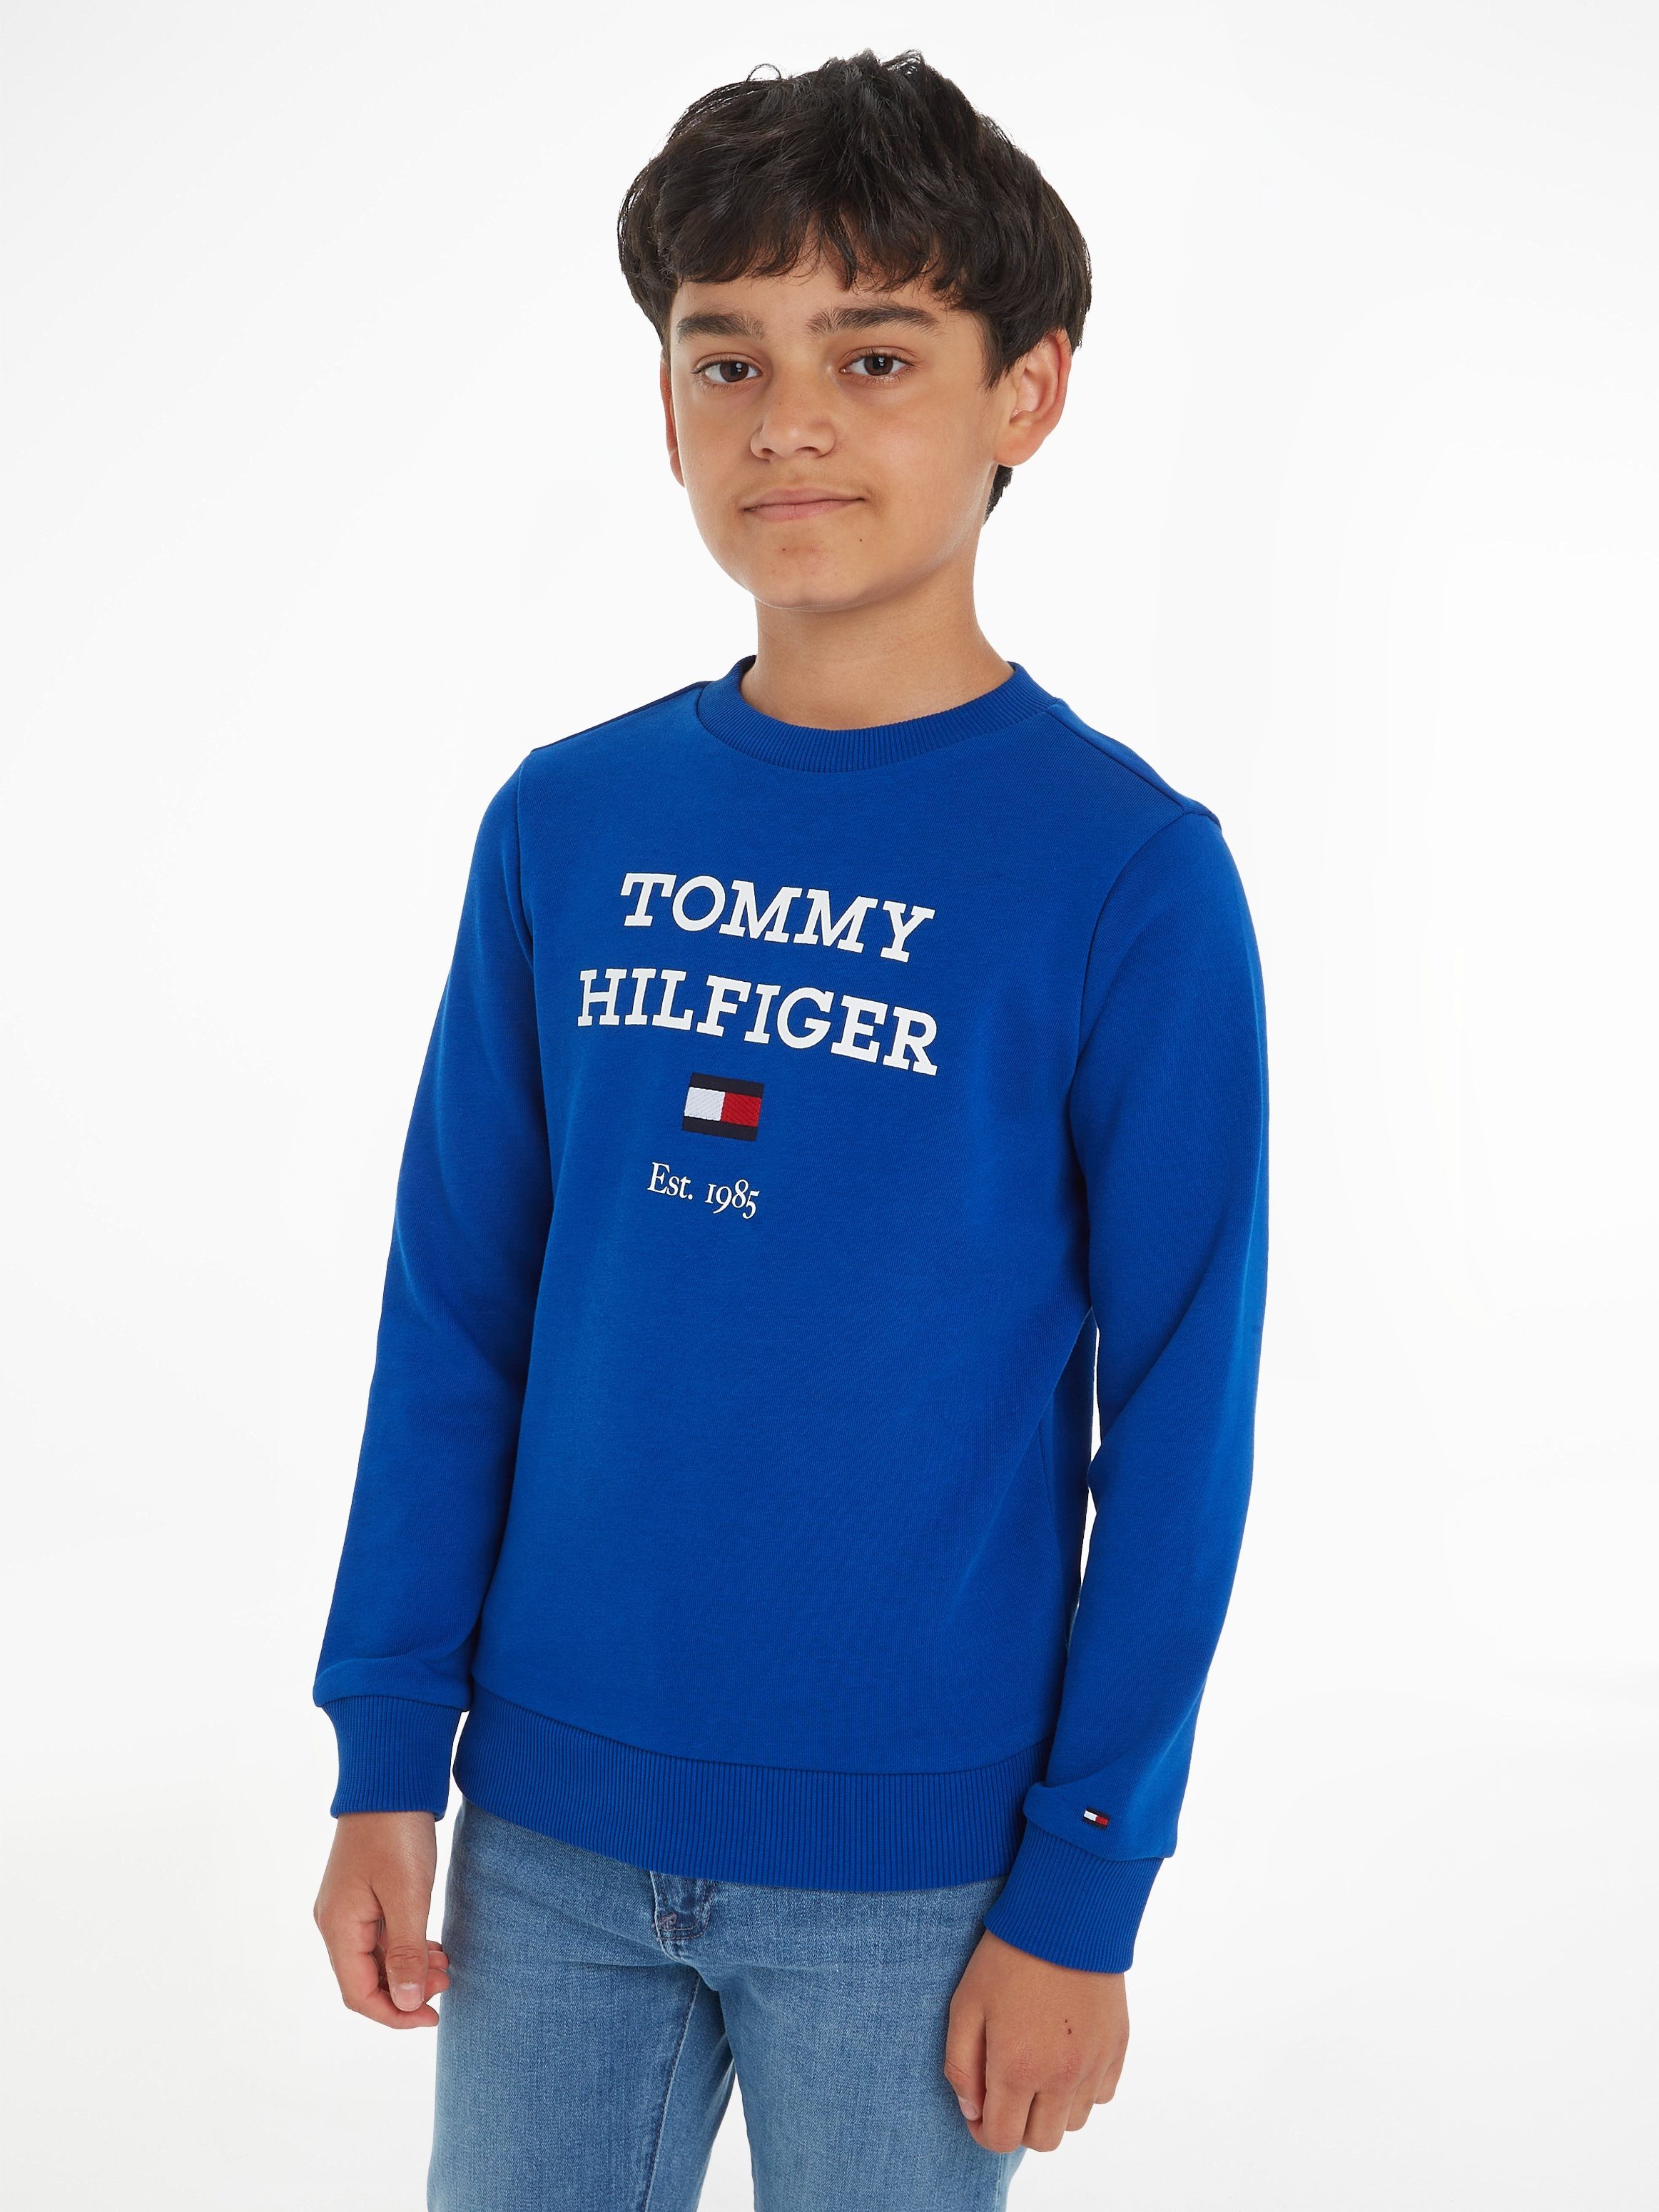 OTTO online kaufen Hilfiger Kinderpullover | Tommy